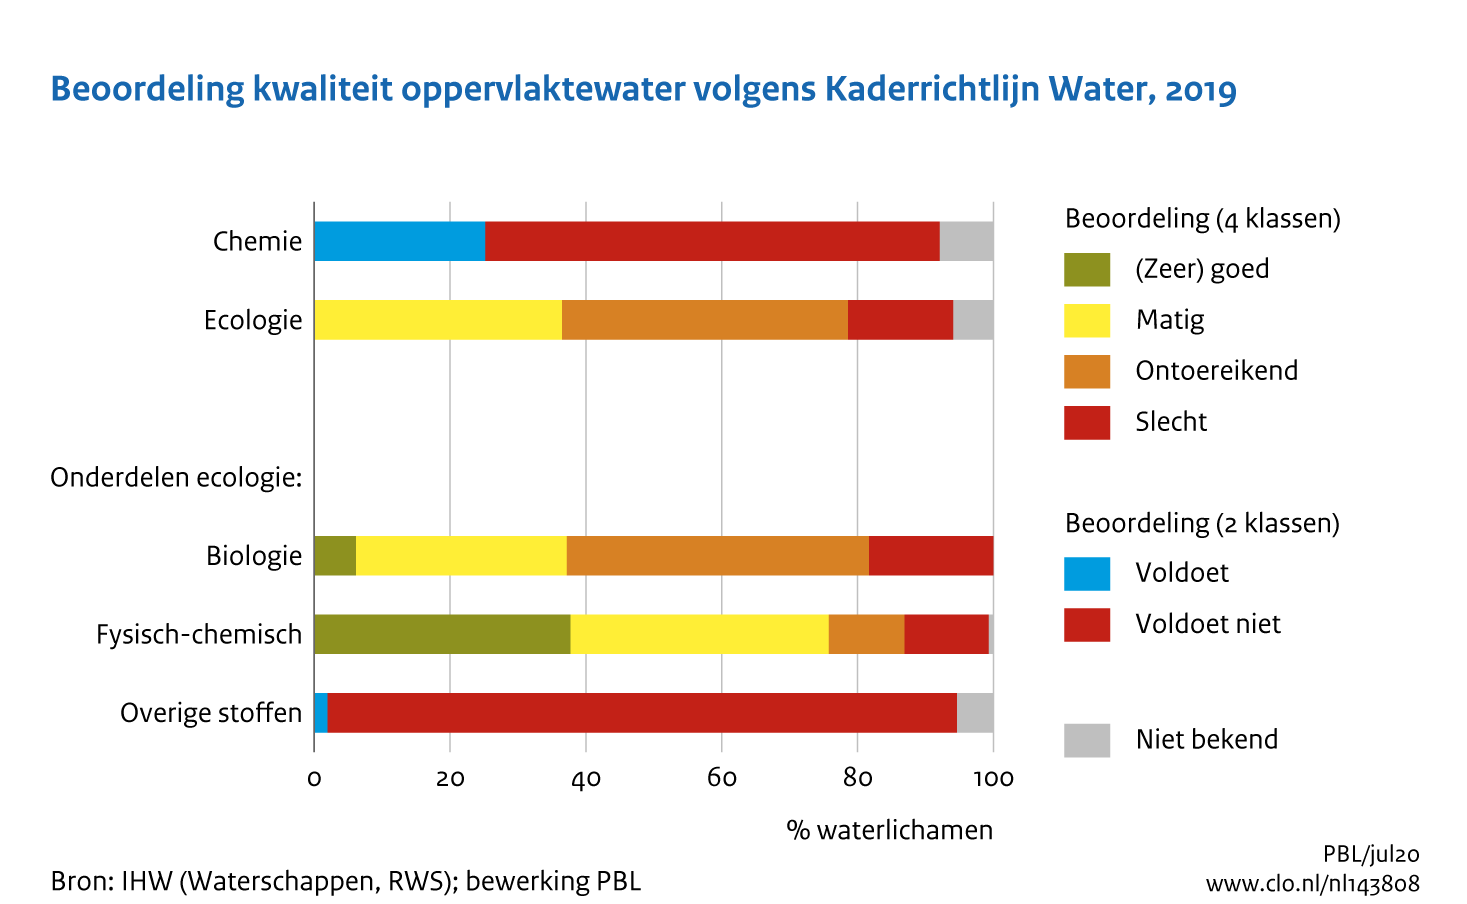 Figuur Beoordeling waterkwaliteit in KRW . In de rest van de tekst wordt deze figuur uitgebreider uitgelegd.